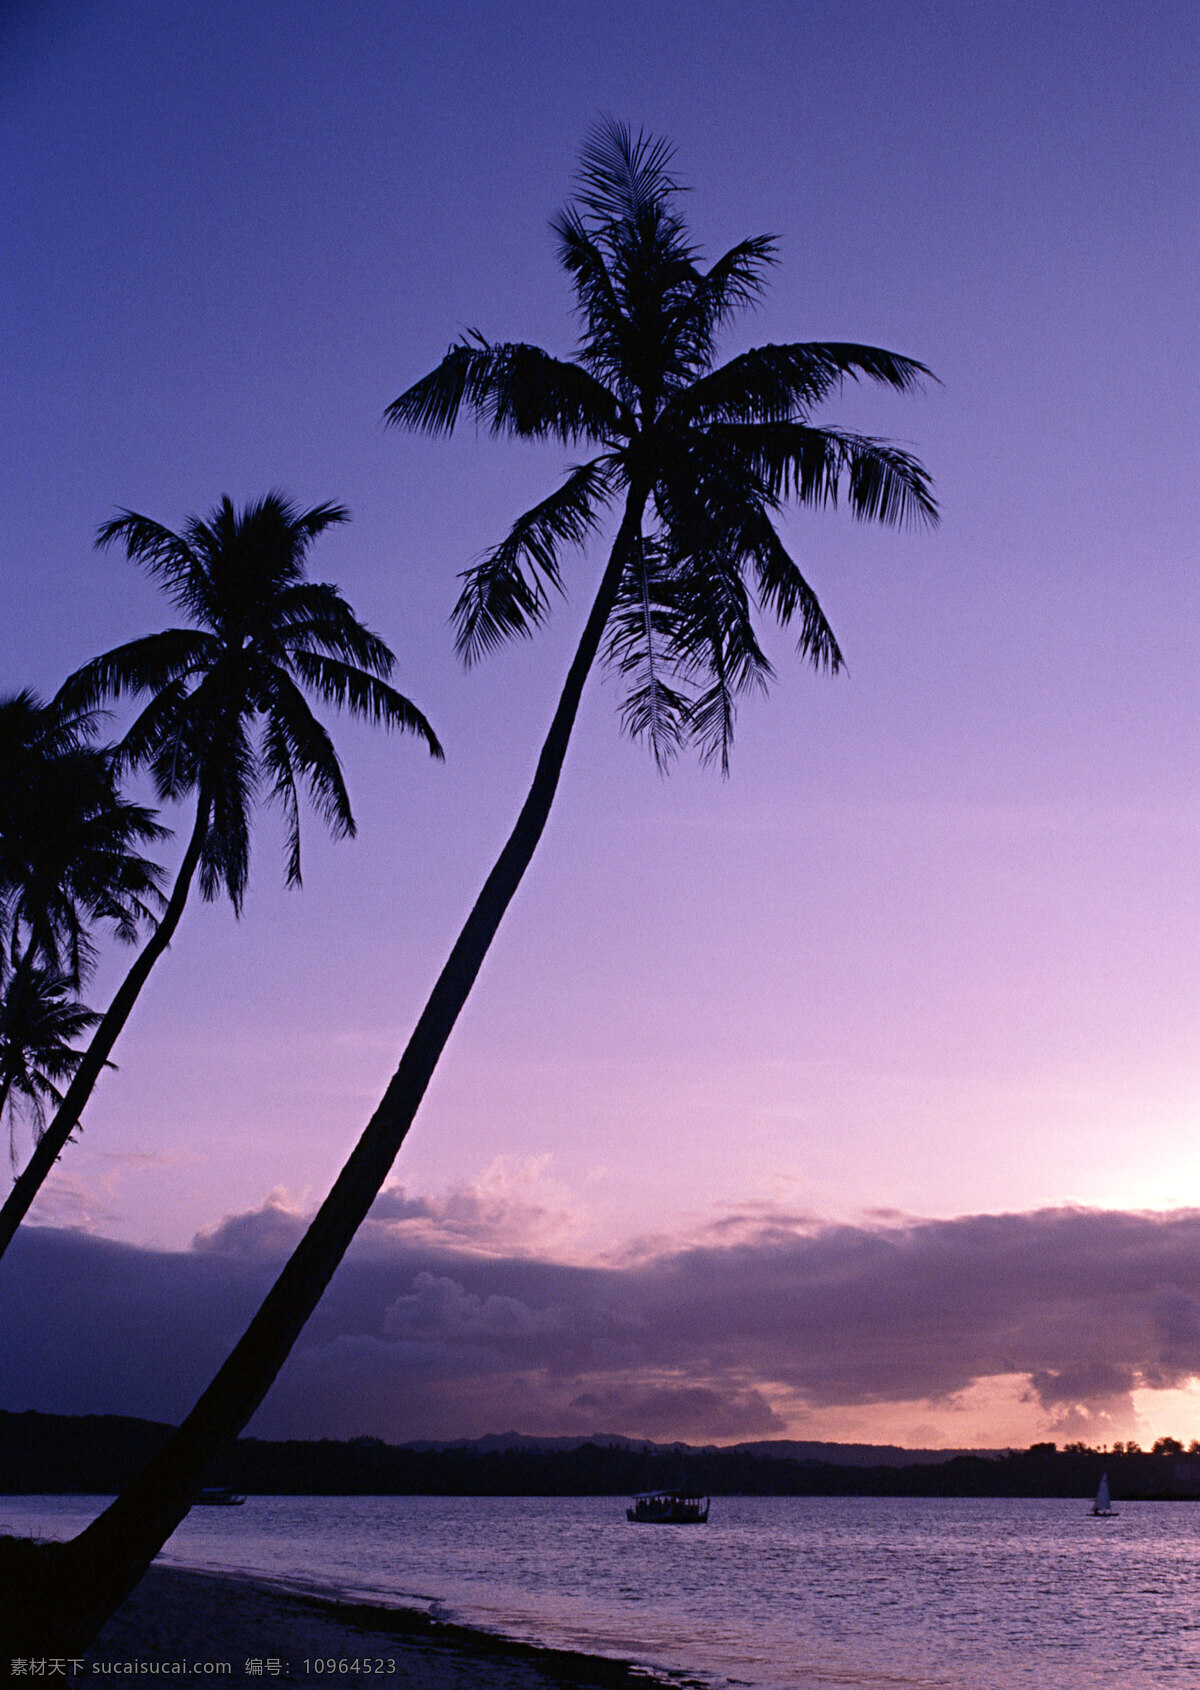 黄昏 时 夏威夷 海 夏威夷风光 美丽风景 大海 海岸风情 海滩 海景 美景 海面 傍晚 椰树 大海图片 风景图片